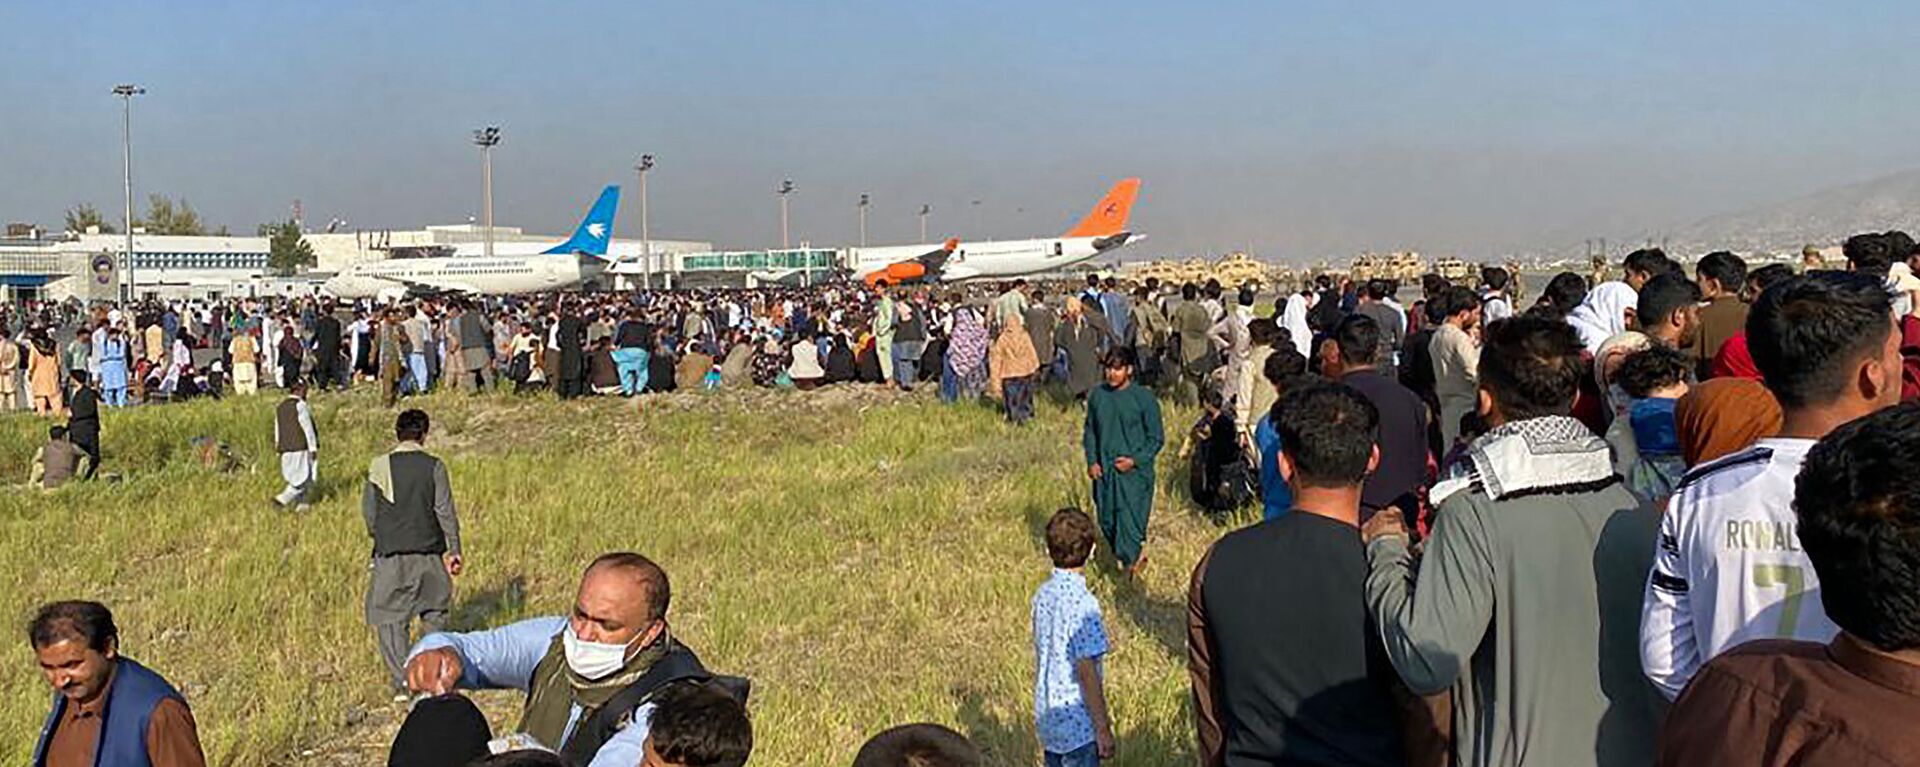 Афганцы толпятся в аэропорту, ожидая вылета из Кабула. 16 августа 2021 года - Sputnik Кыргызстан, 1920, 16.08.2021